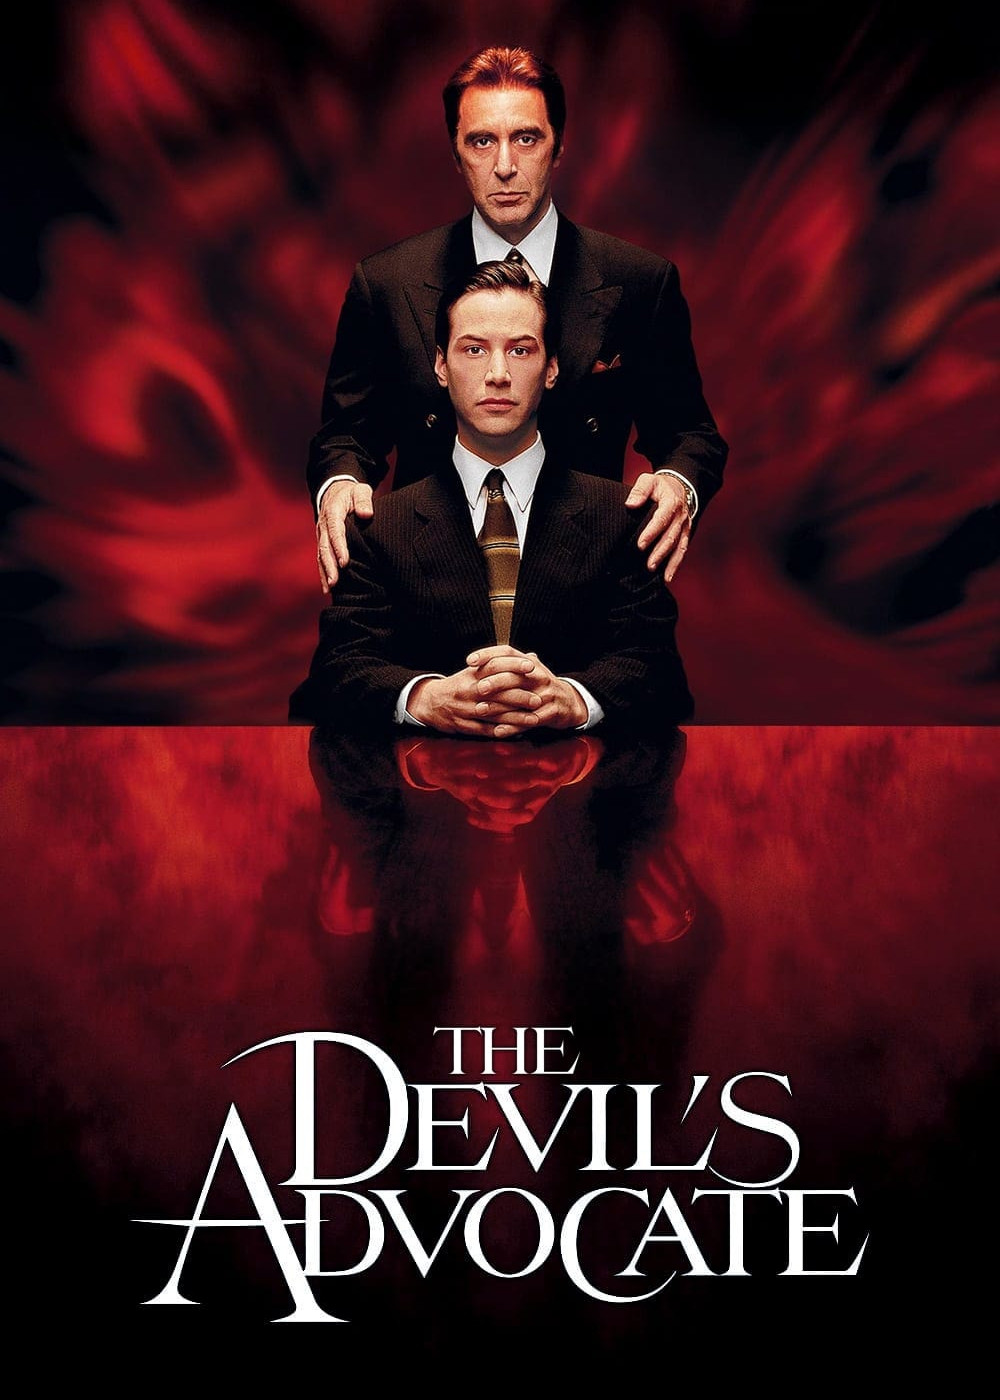 The Devil's Advocate (The Devil's Advocate) [1997]